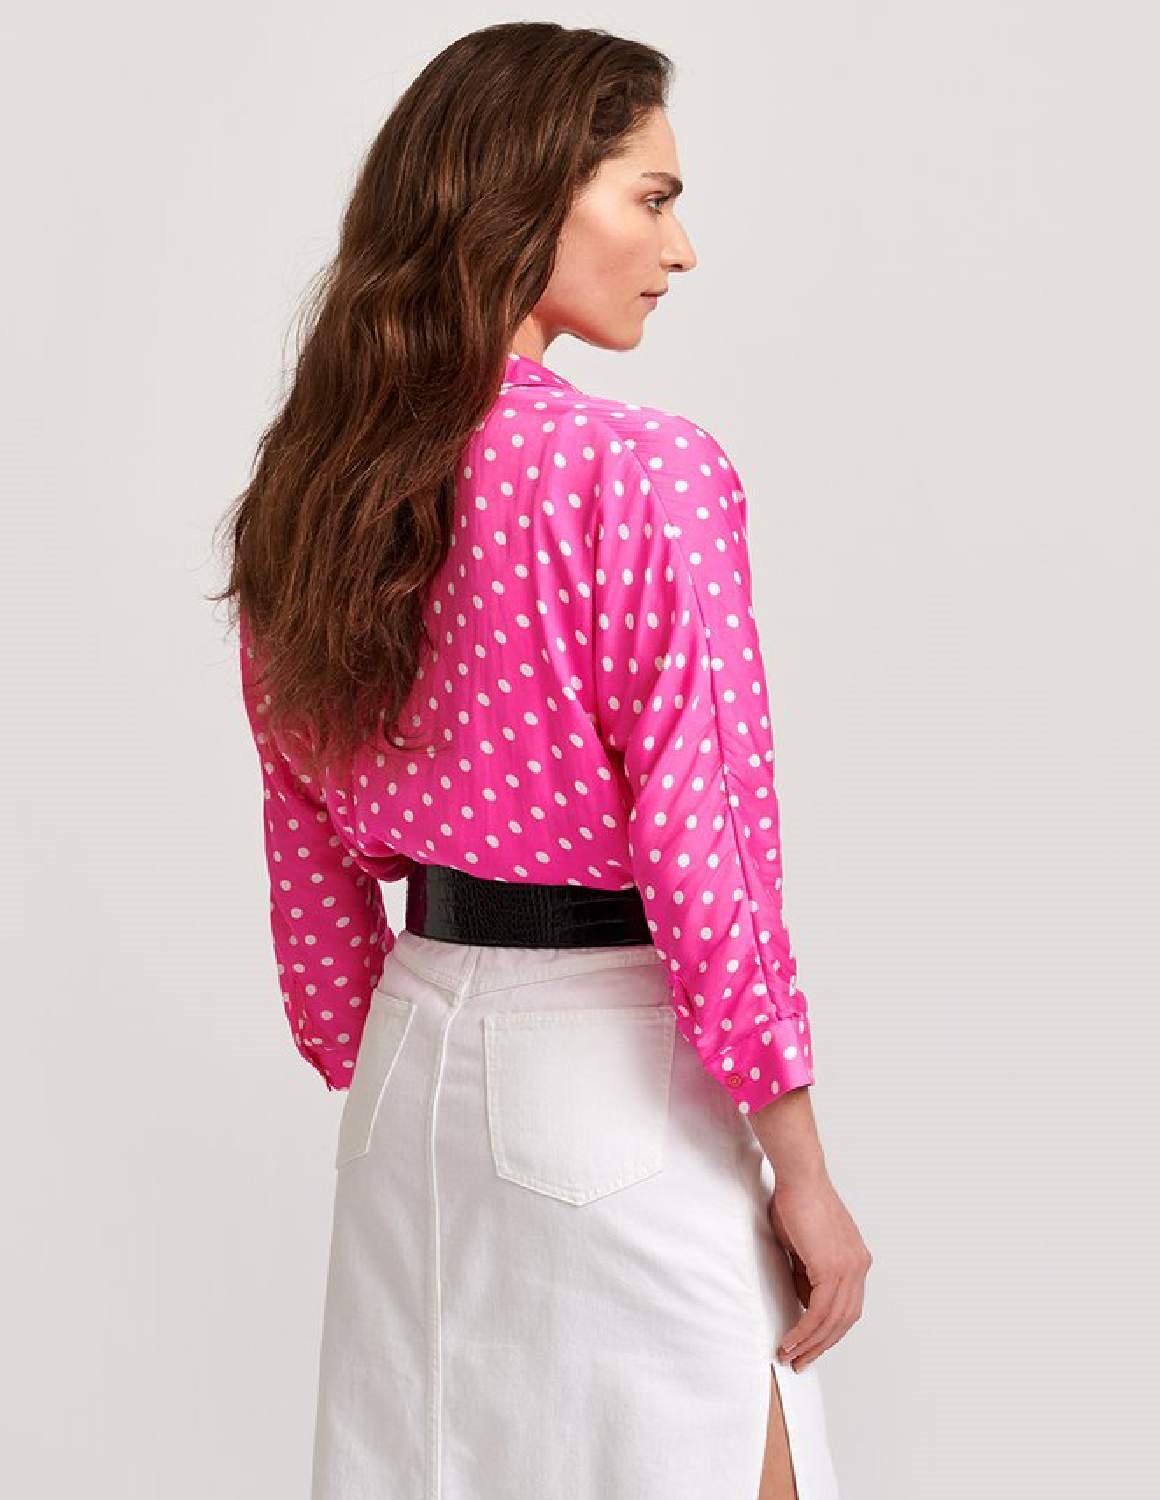 Essentiel Antwerp Viral shirt - neon pink / off-white polka dot ...